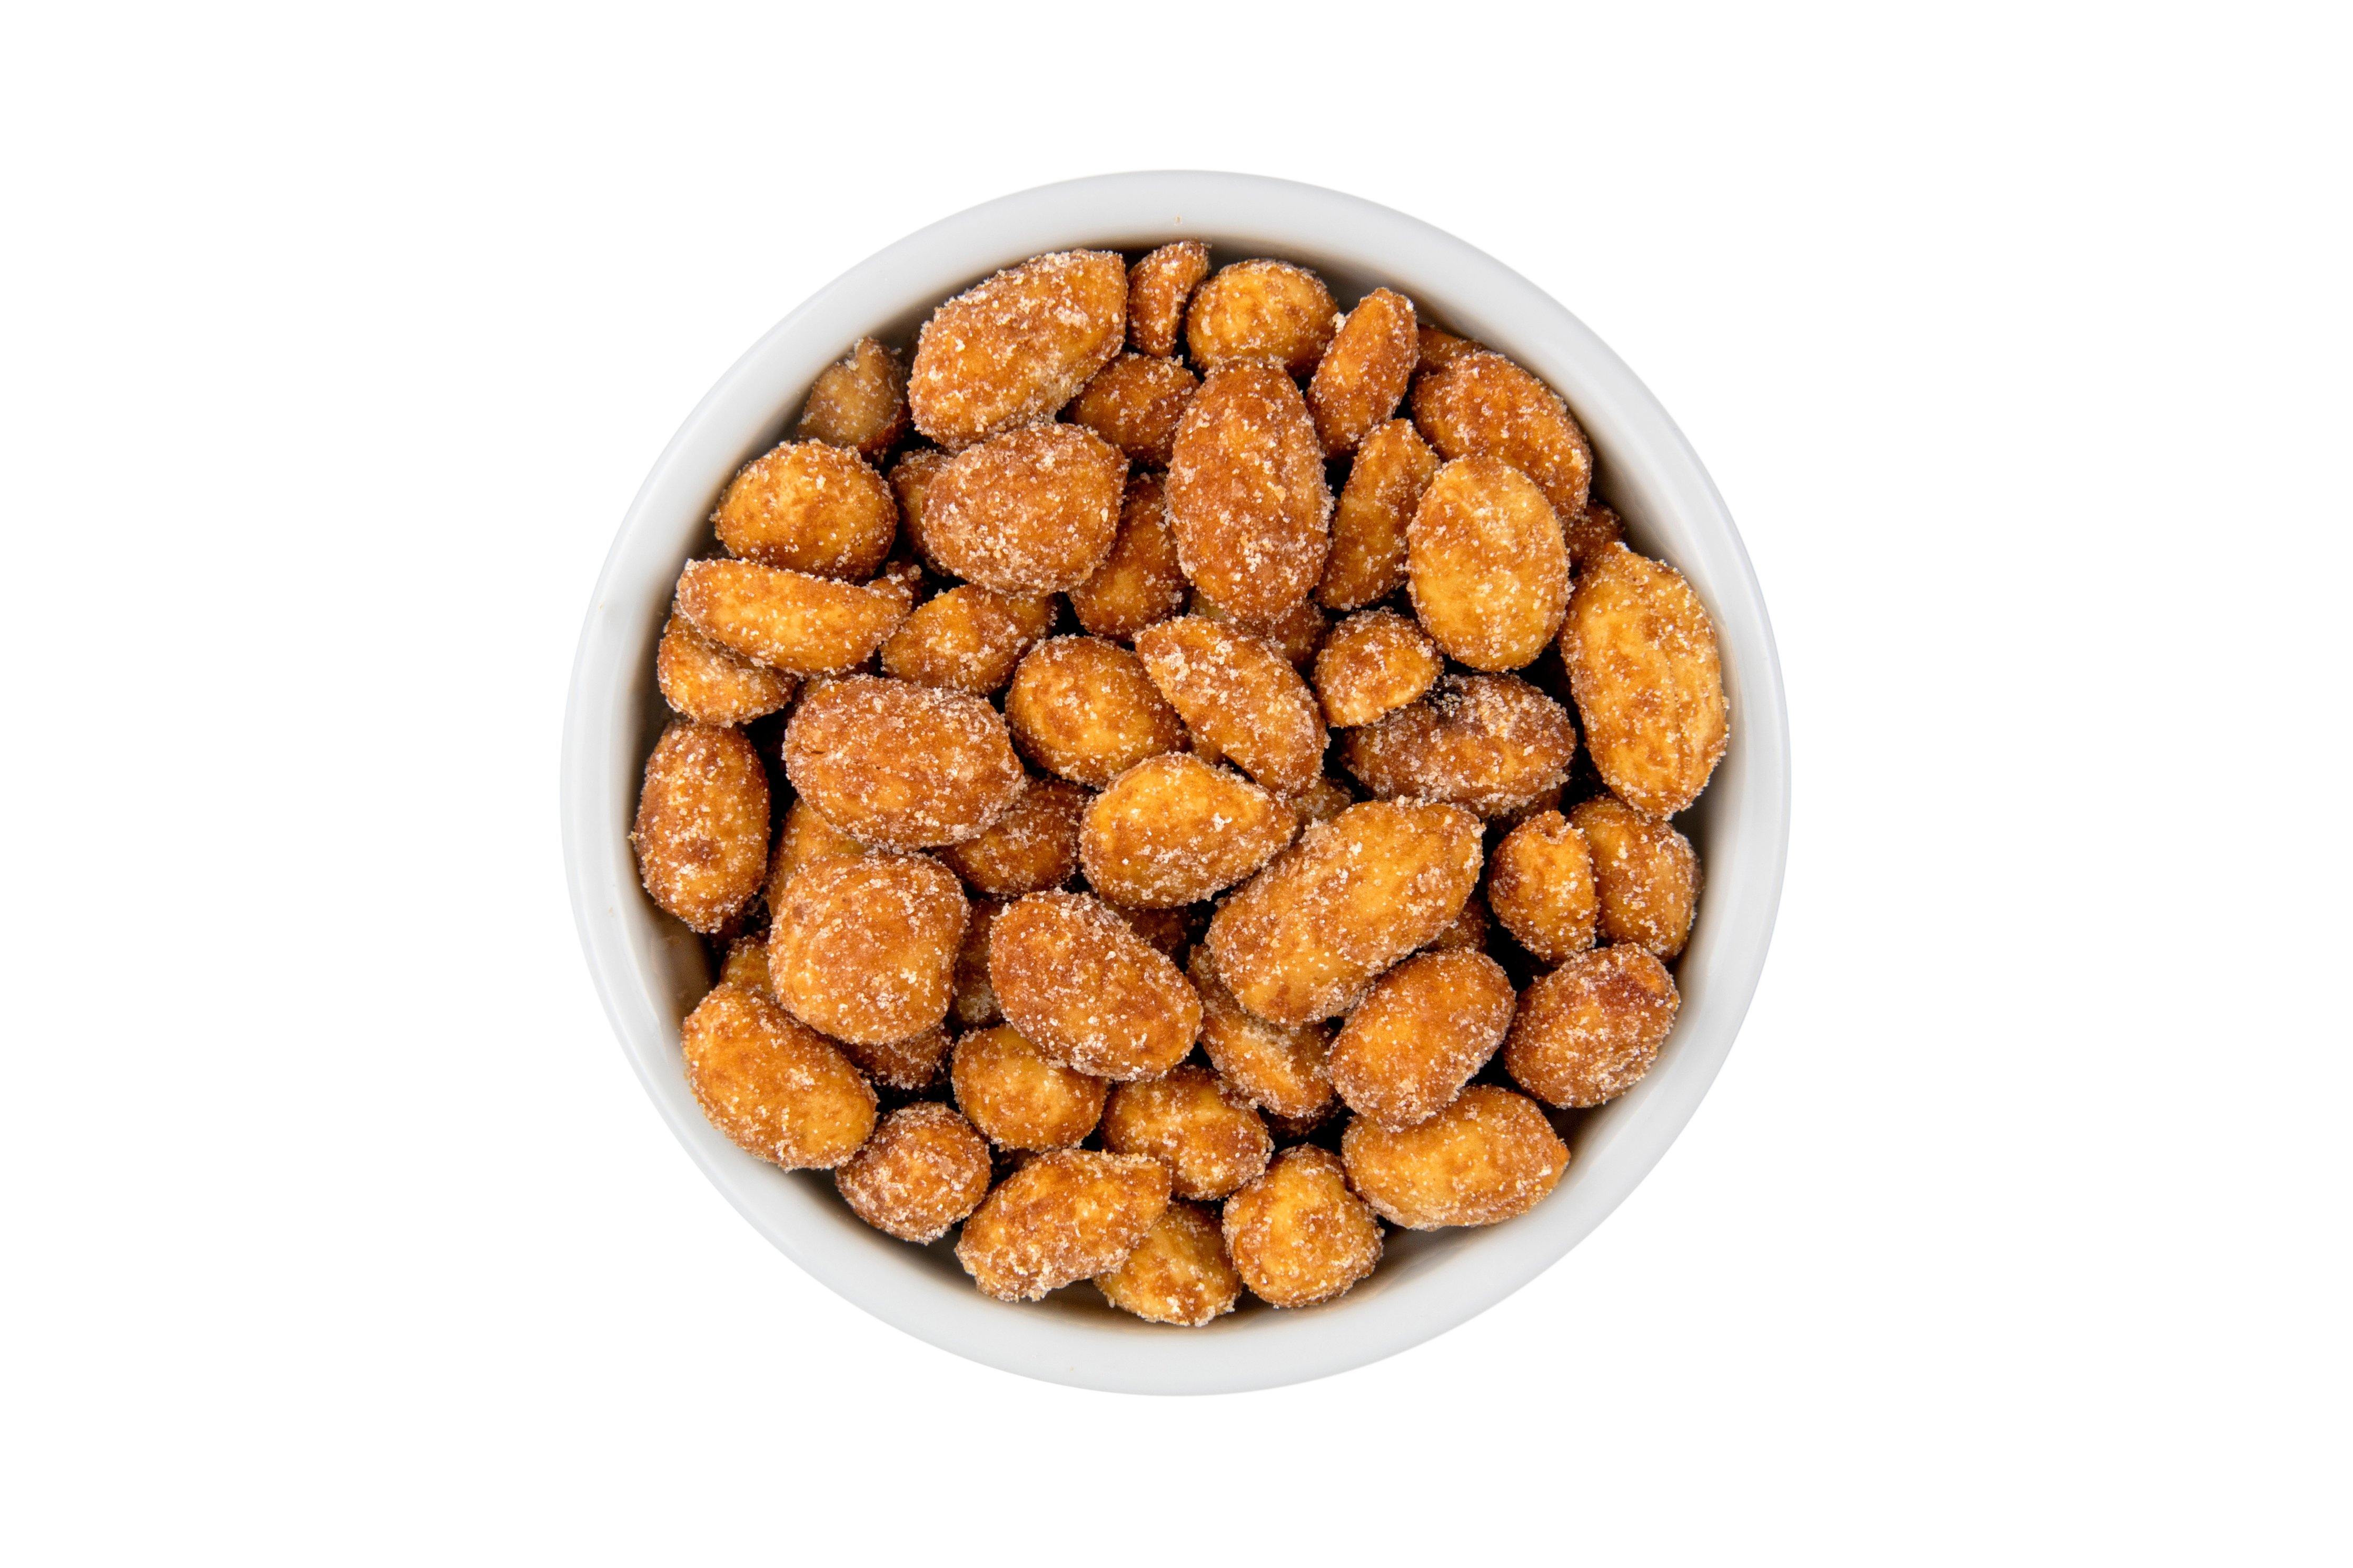 Honey Roasted Peanuts, Roasted Nuts, Virginia Peanut, Food Gifts